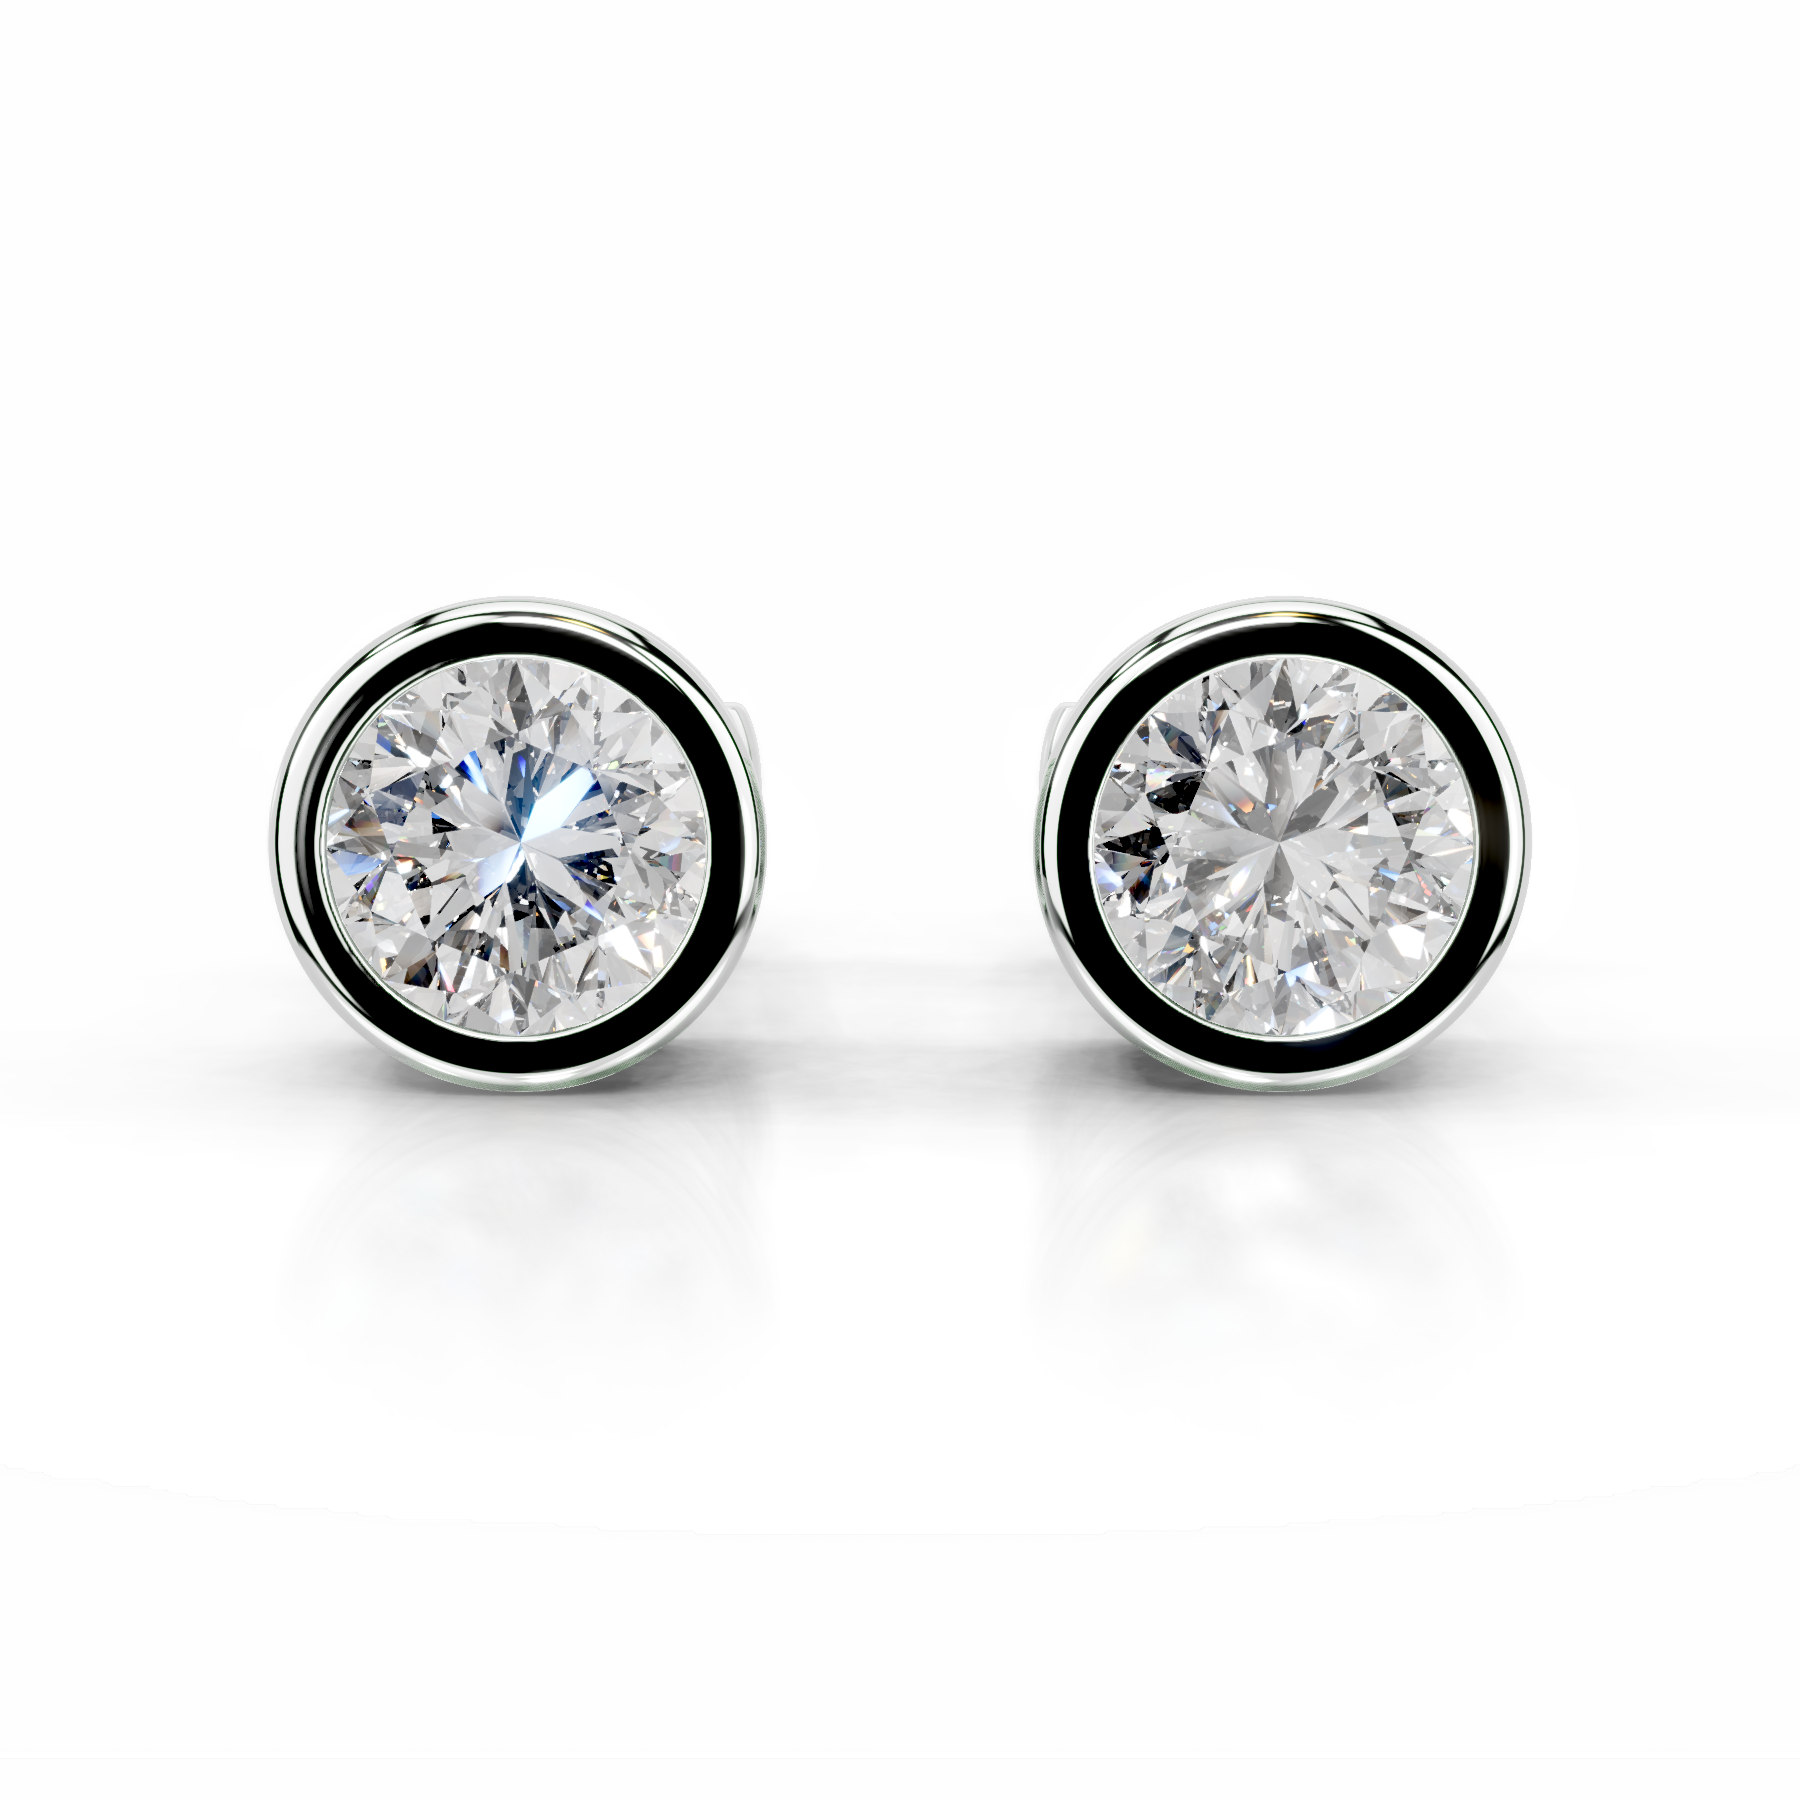 Amber Diamond Earrings   (3 Carat) -18K White Gold